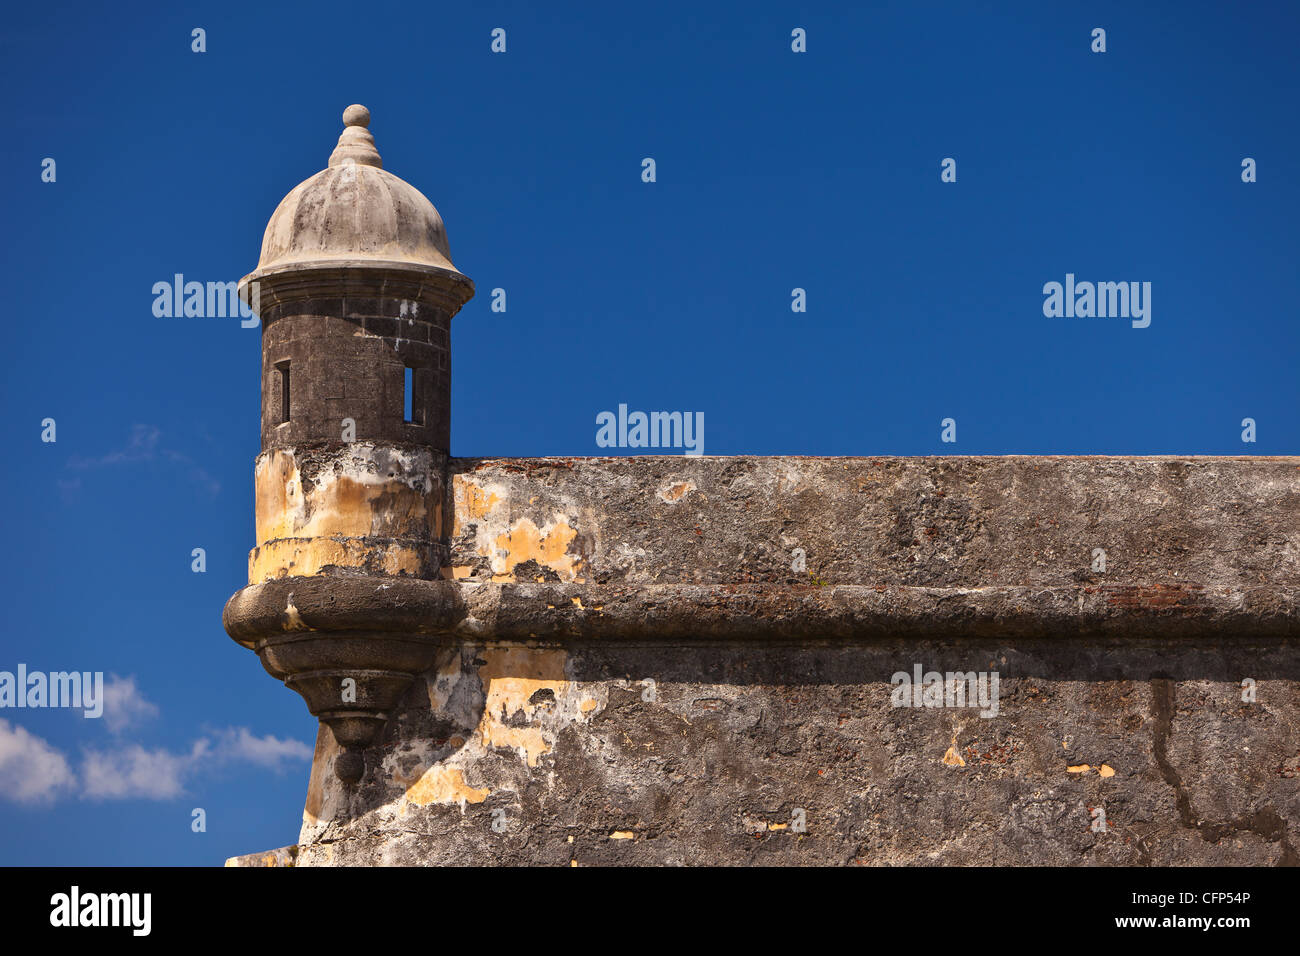 La vecchia San Juan, Puerto Rico - garitta torretta sul muro del Castillo San Felipe del Morro, la storica fortezza. Foto Stock